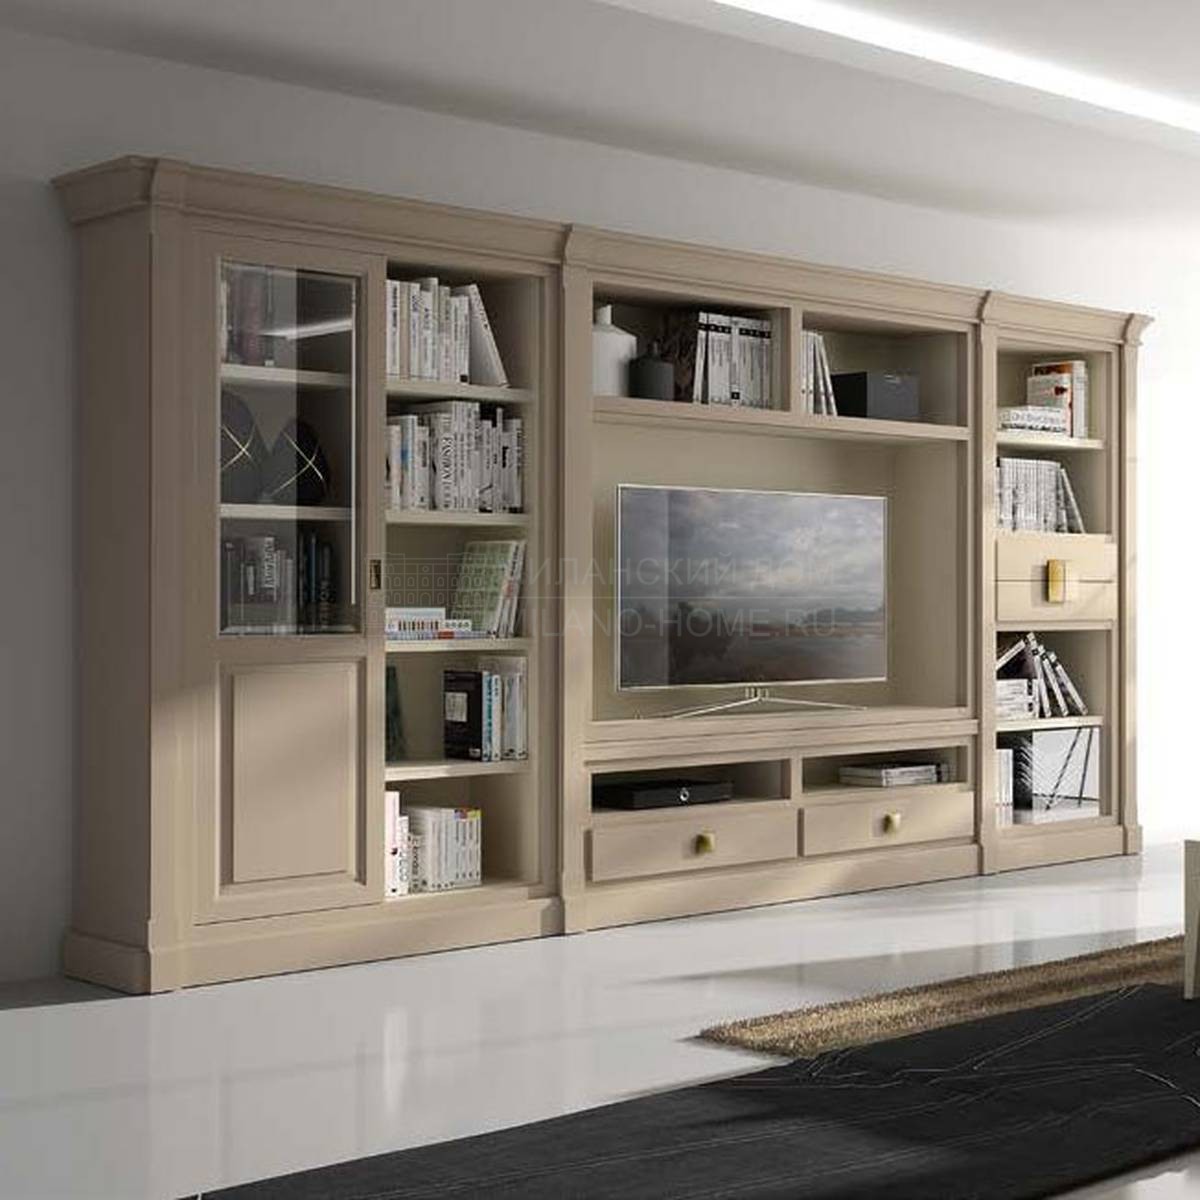 Мебель для ТВ Altair/Adara interiors Nomada из Испании фабрики LA EBANISTERIA